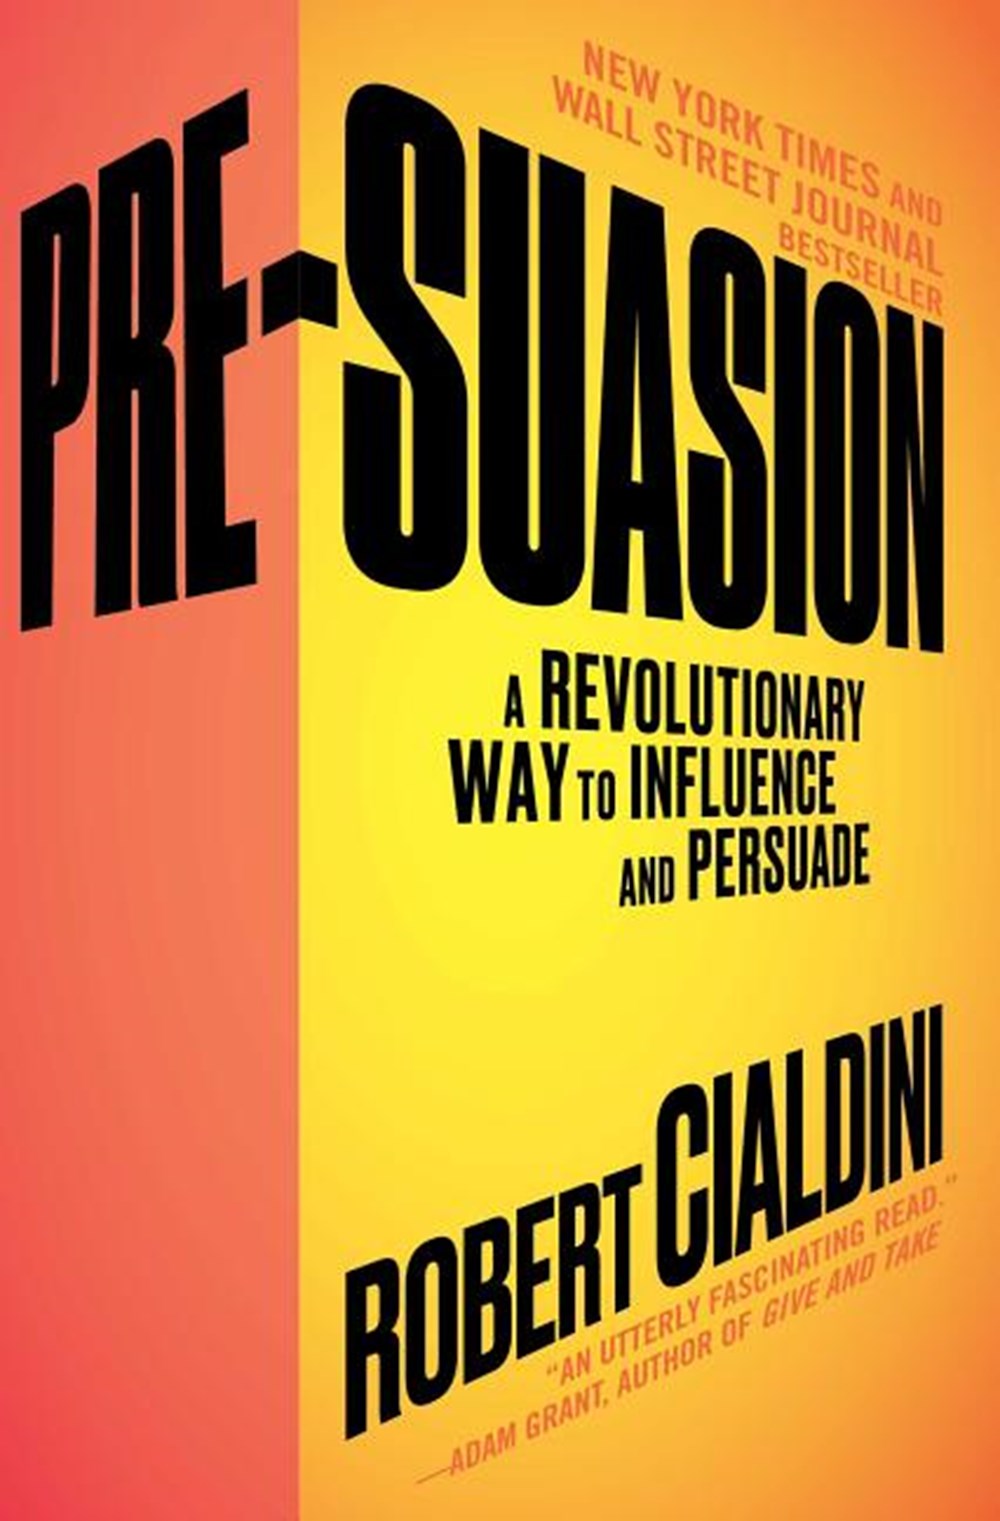 Pre-Suasion A Revolutionary Way to Influence and Persuade